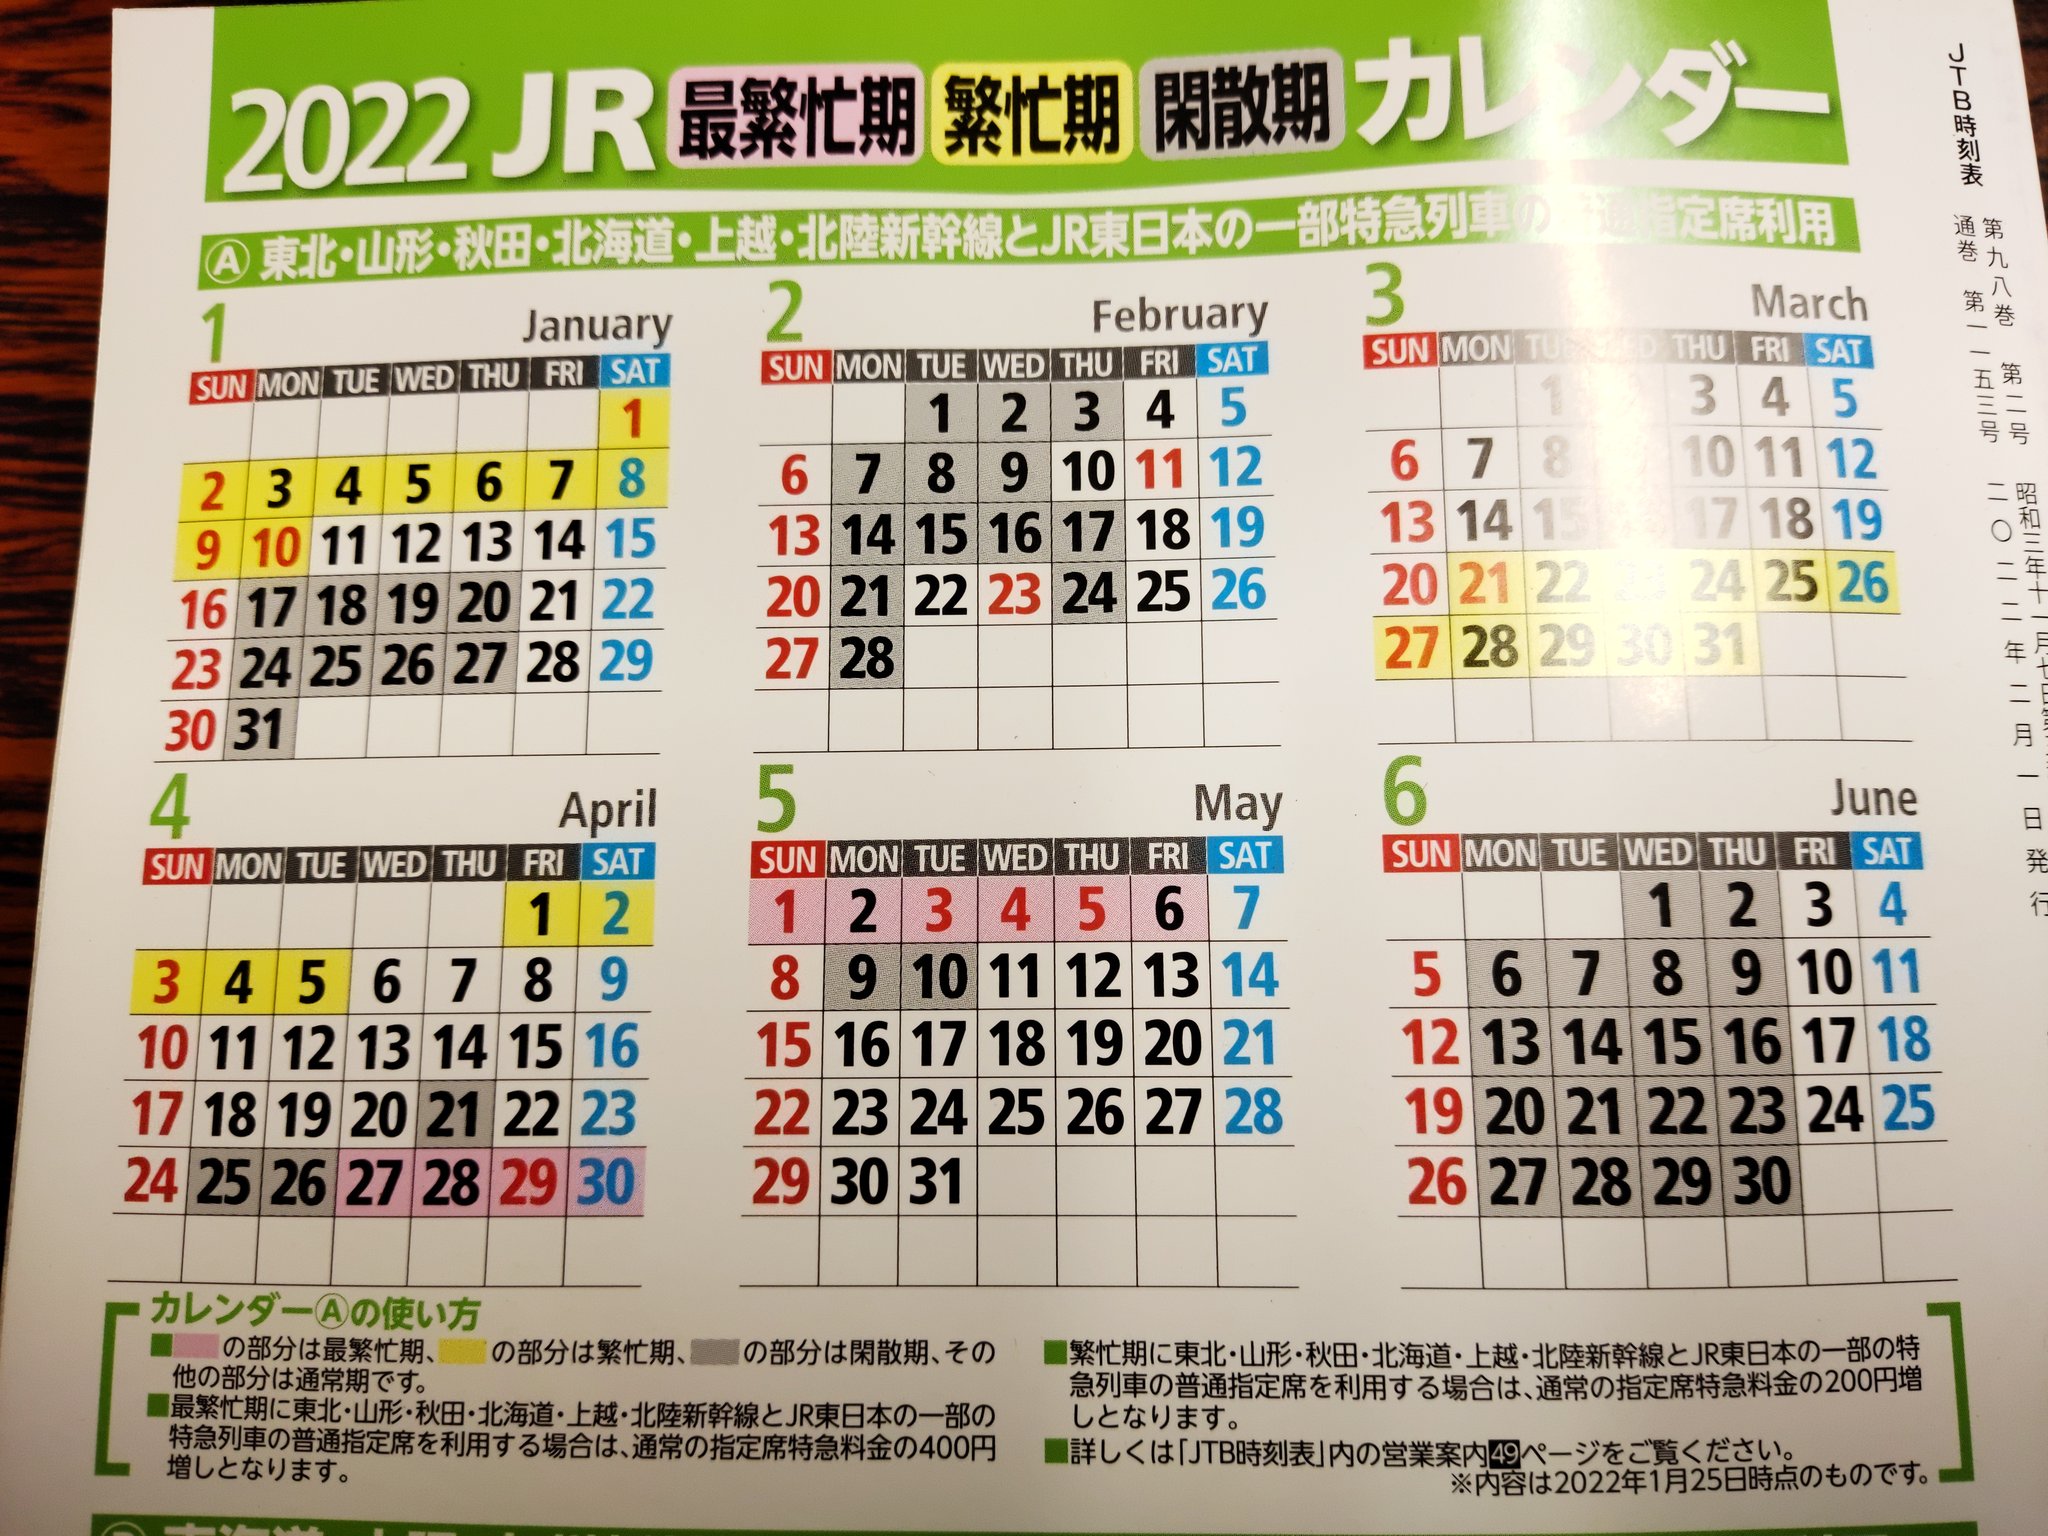 2022 期 カレンダー 新幹線 繁忙 【繁忙期・閑散期カレンダー】JR指定席料金（2022年/令和4年版）